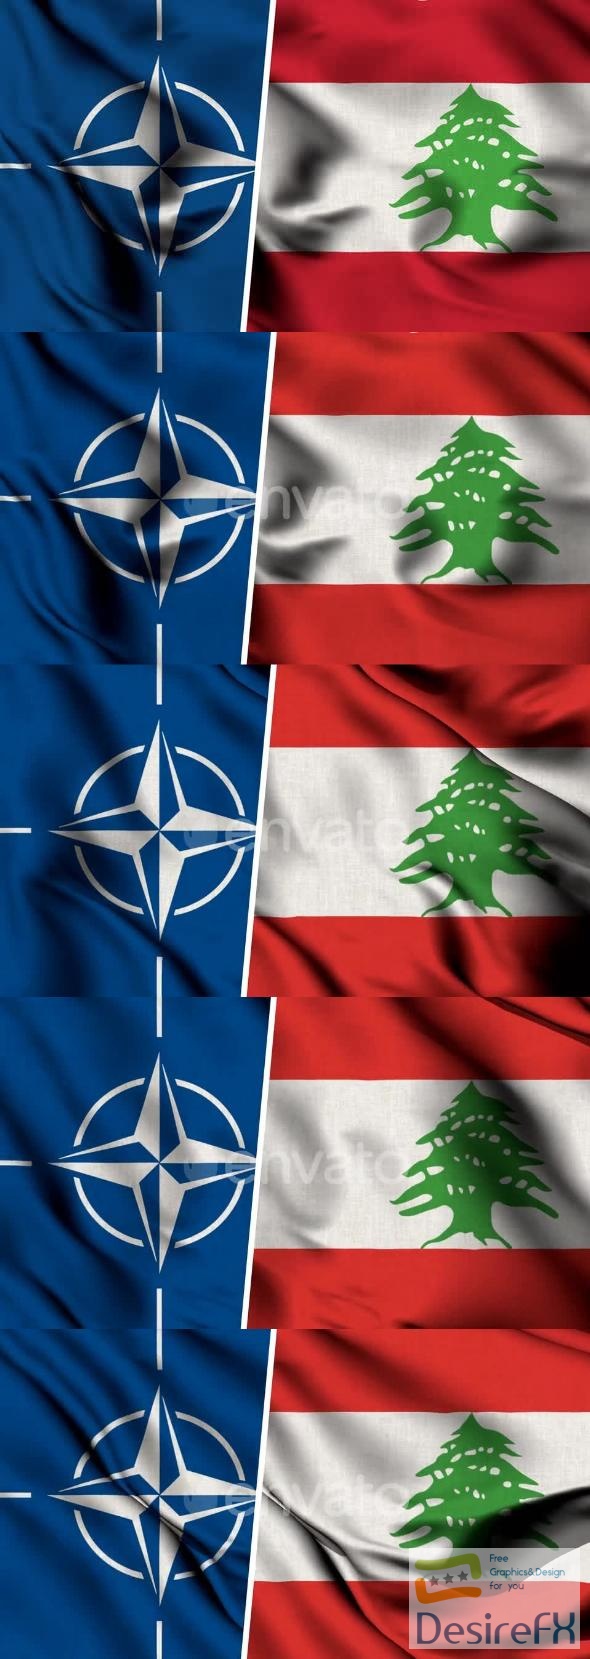 VideoHive Nato Flag And Flag Of Lebanon 47577949